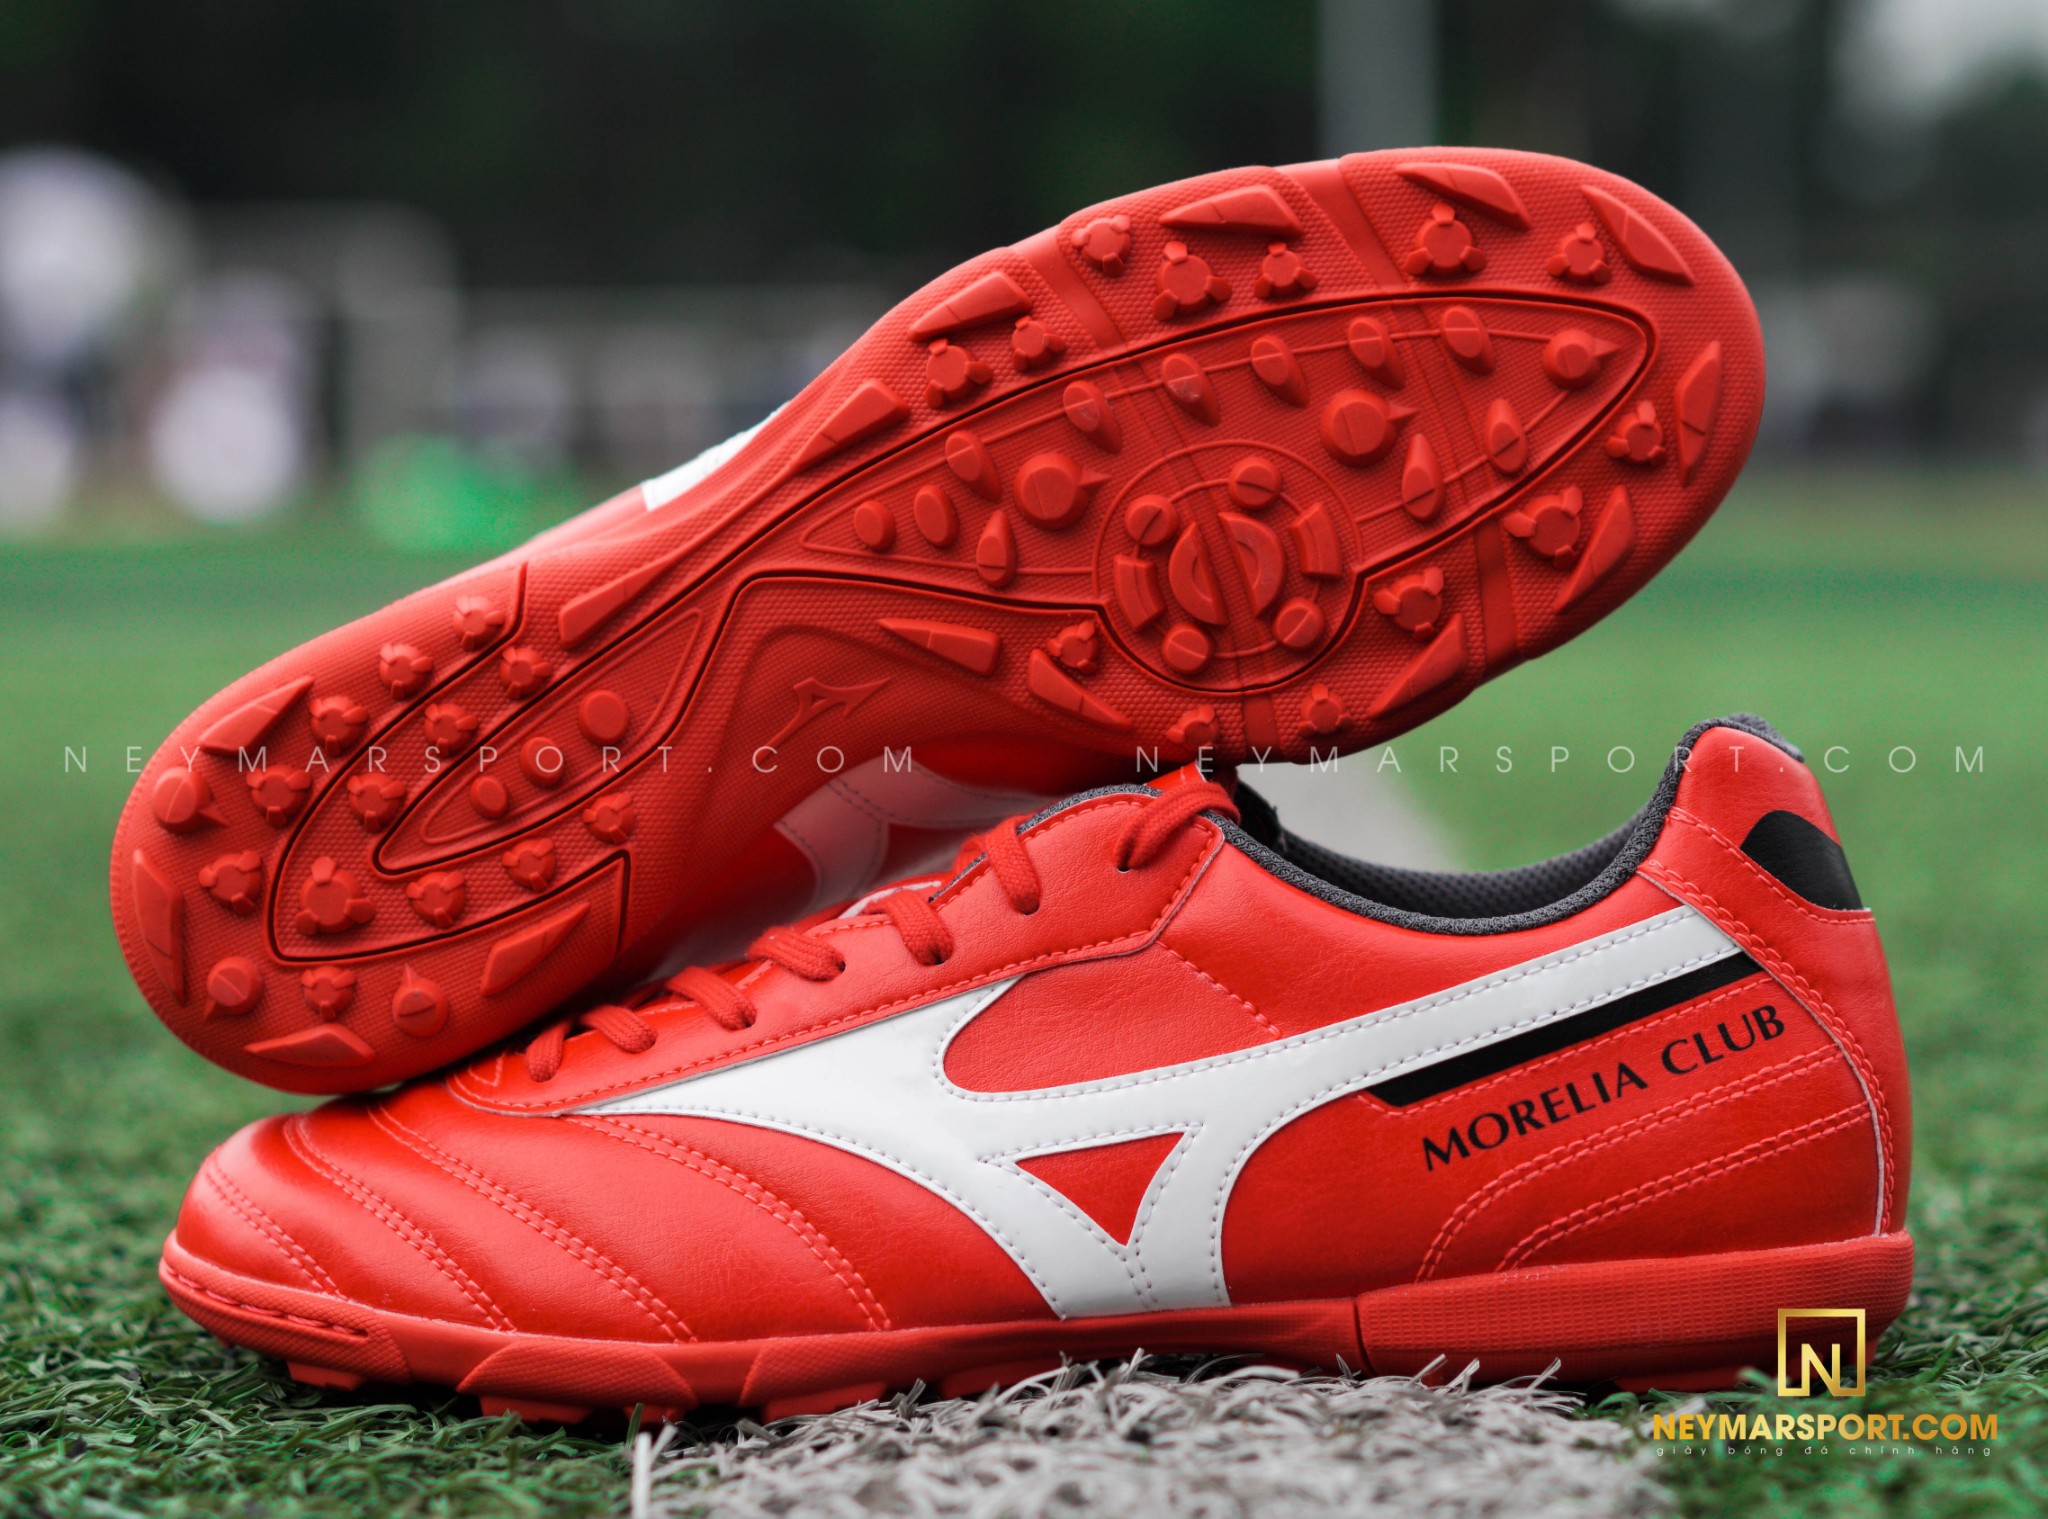 Màu đỏ nổi bật của giày đá bóng Mizuno trong bộ sưu tập IGNITION